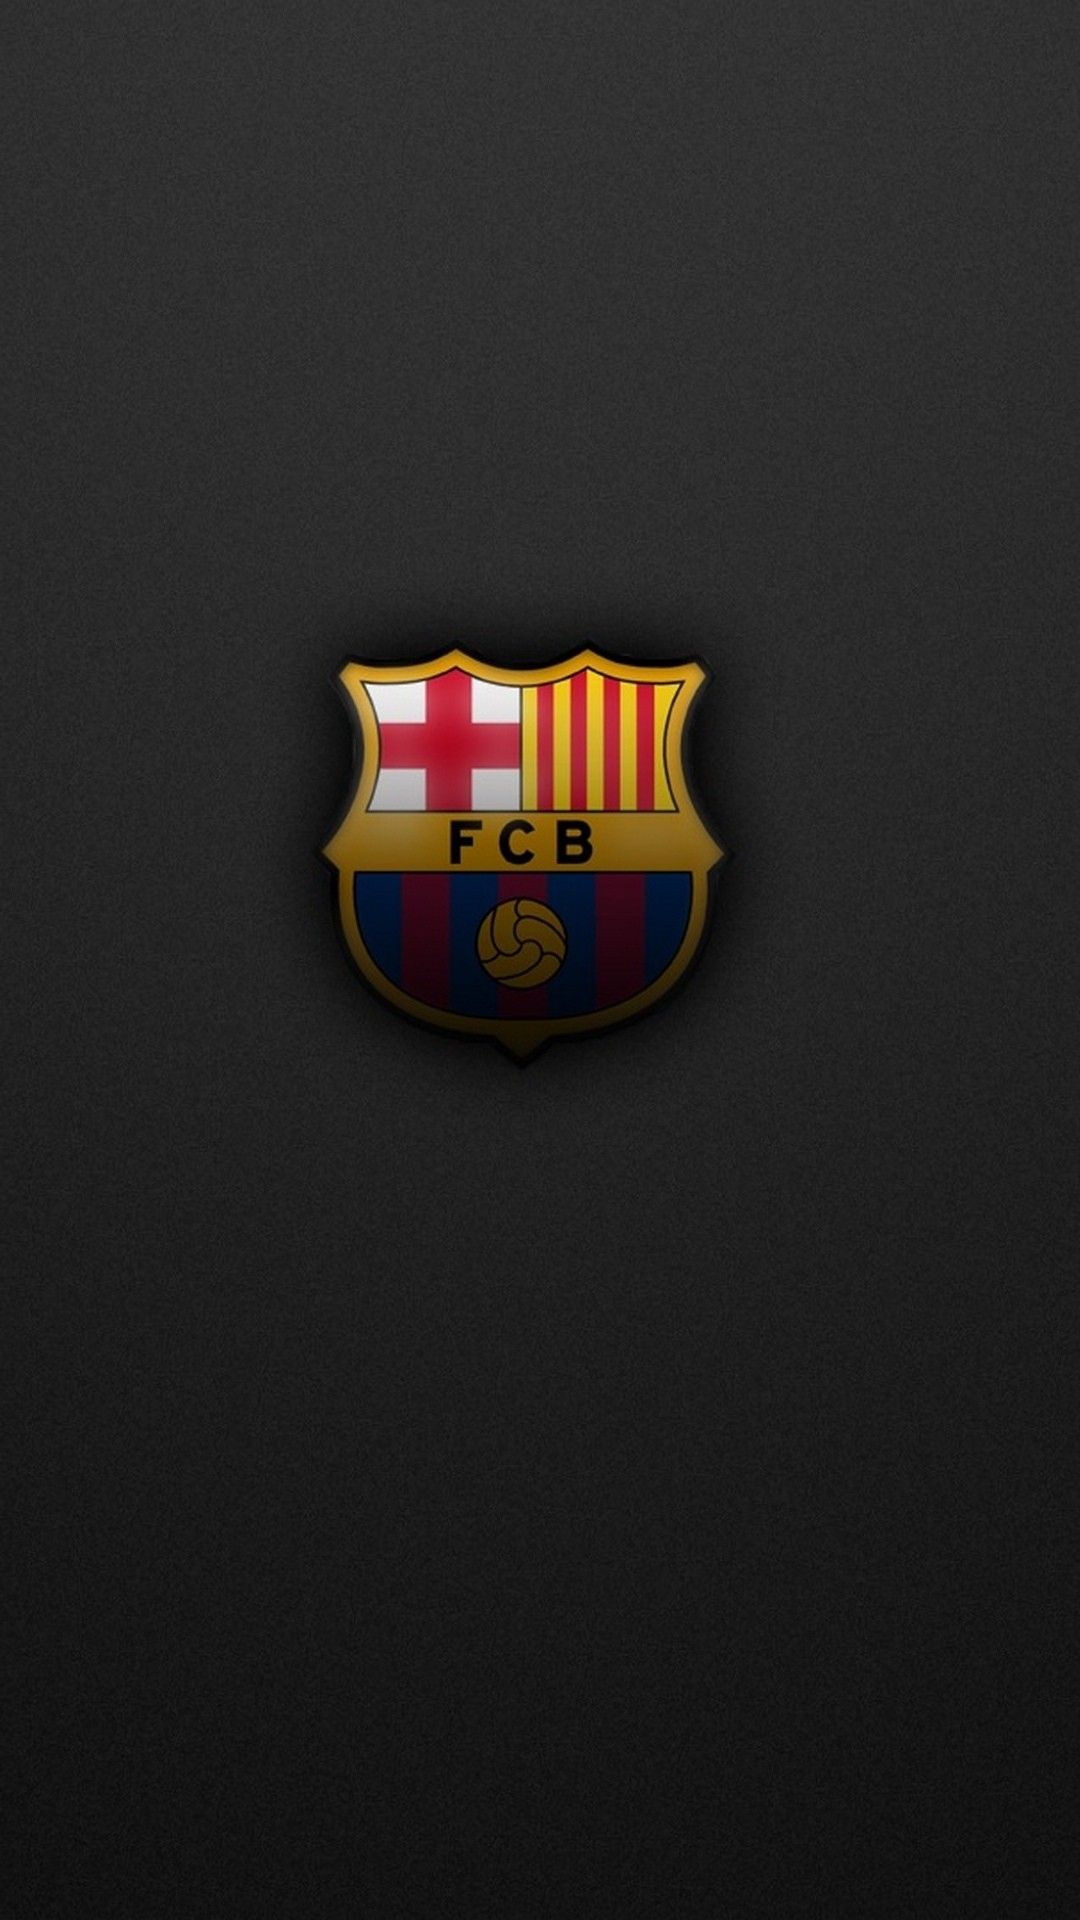 fc barcelone fond d'écran iphone,emblème,symbole,badge,illustration